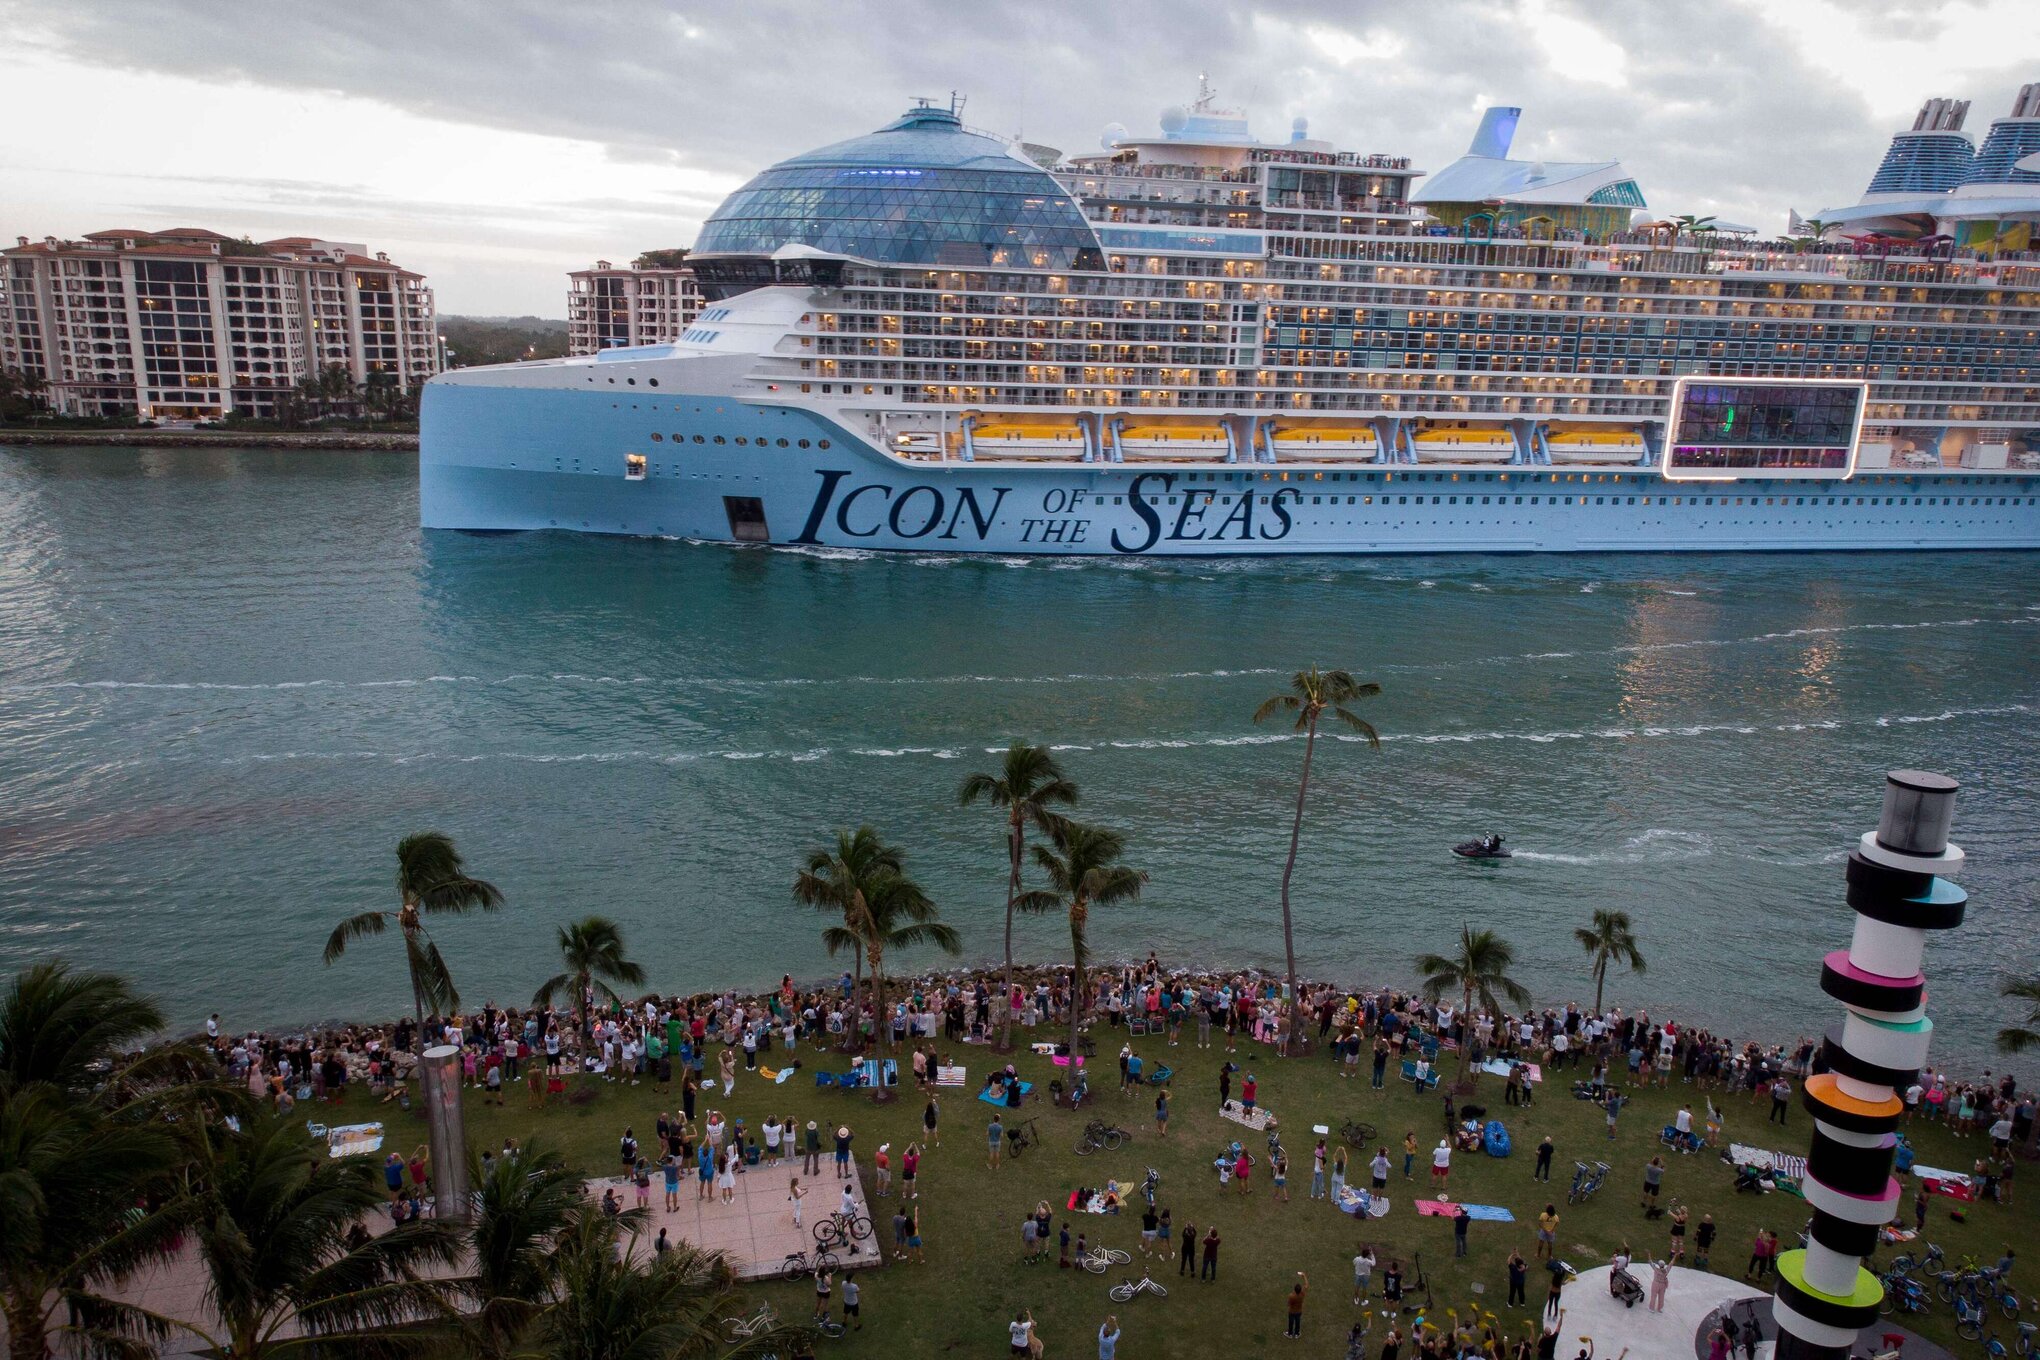 تُعد "أيكن أوف ذي سيز" Icon of the Seas، المسجلة في جزر البهاماس، أول سفينة تابعة لشركة الرحلات البحرية الأميركية العملاقة تعمل بالغاز الطبيعي المسال